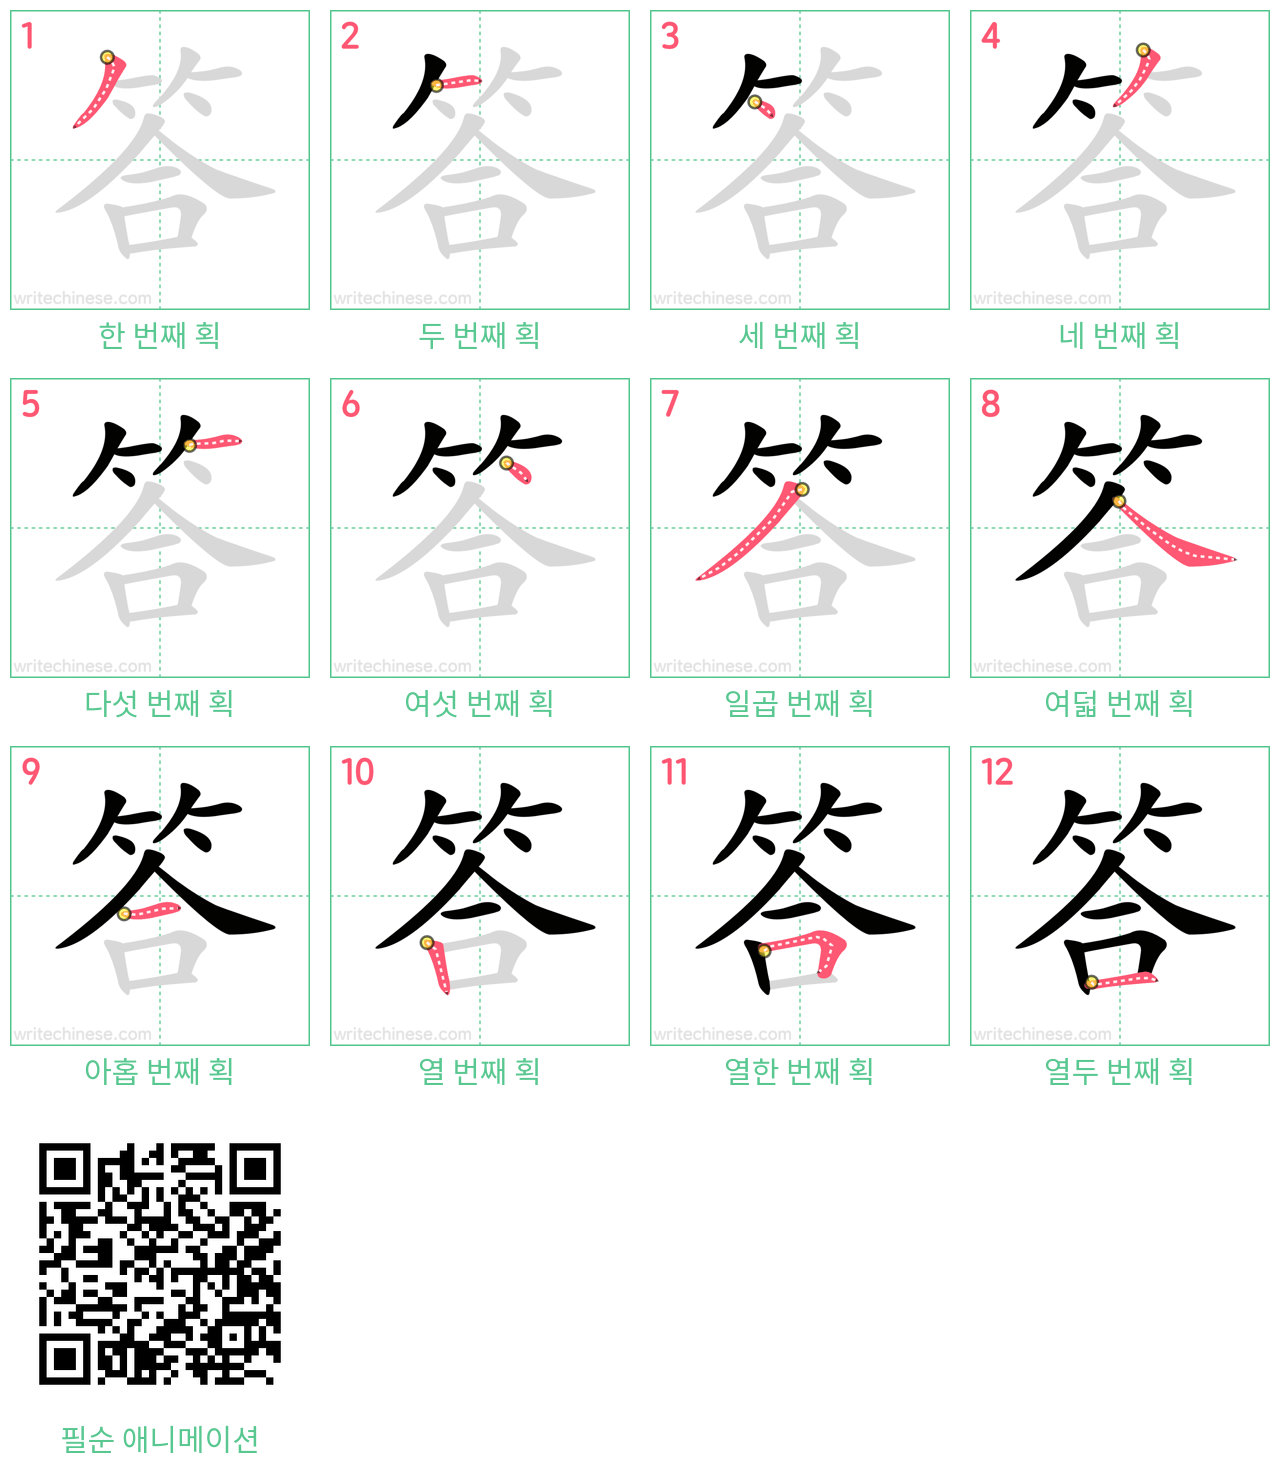 答 step-by-step stroke order diagrams